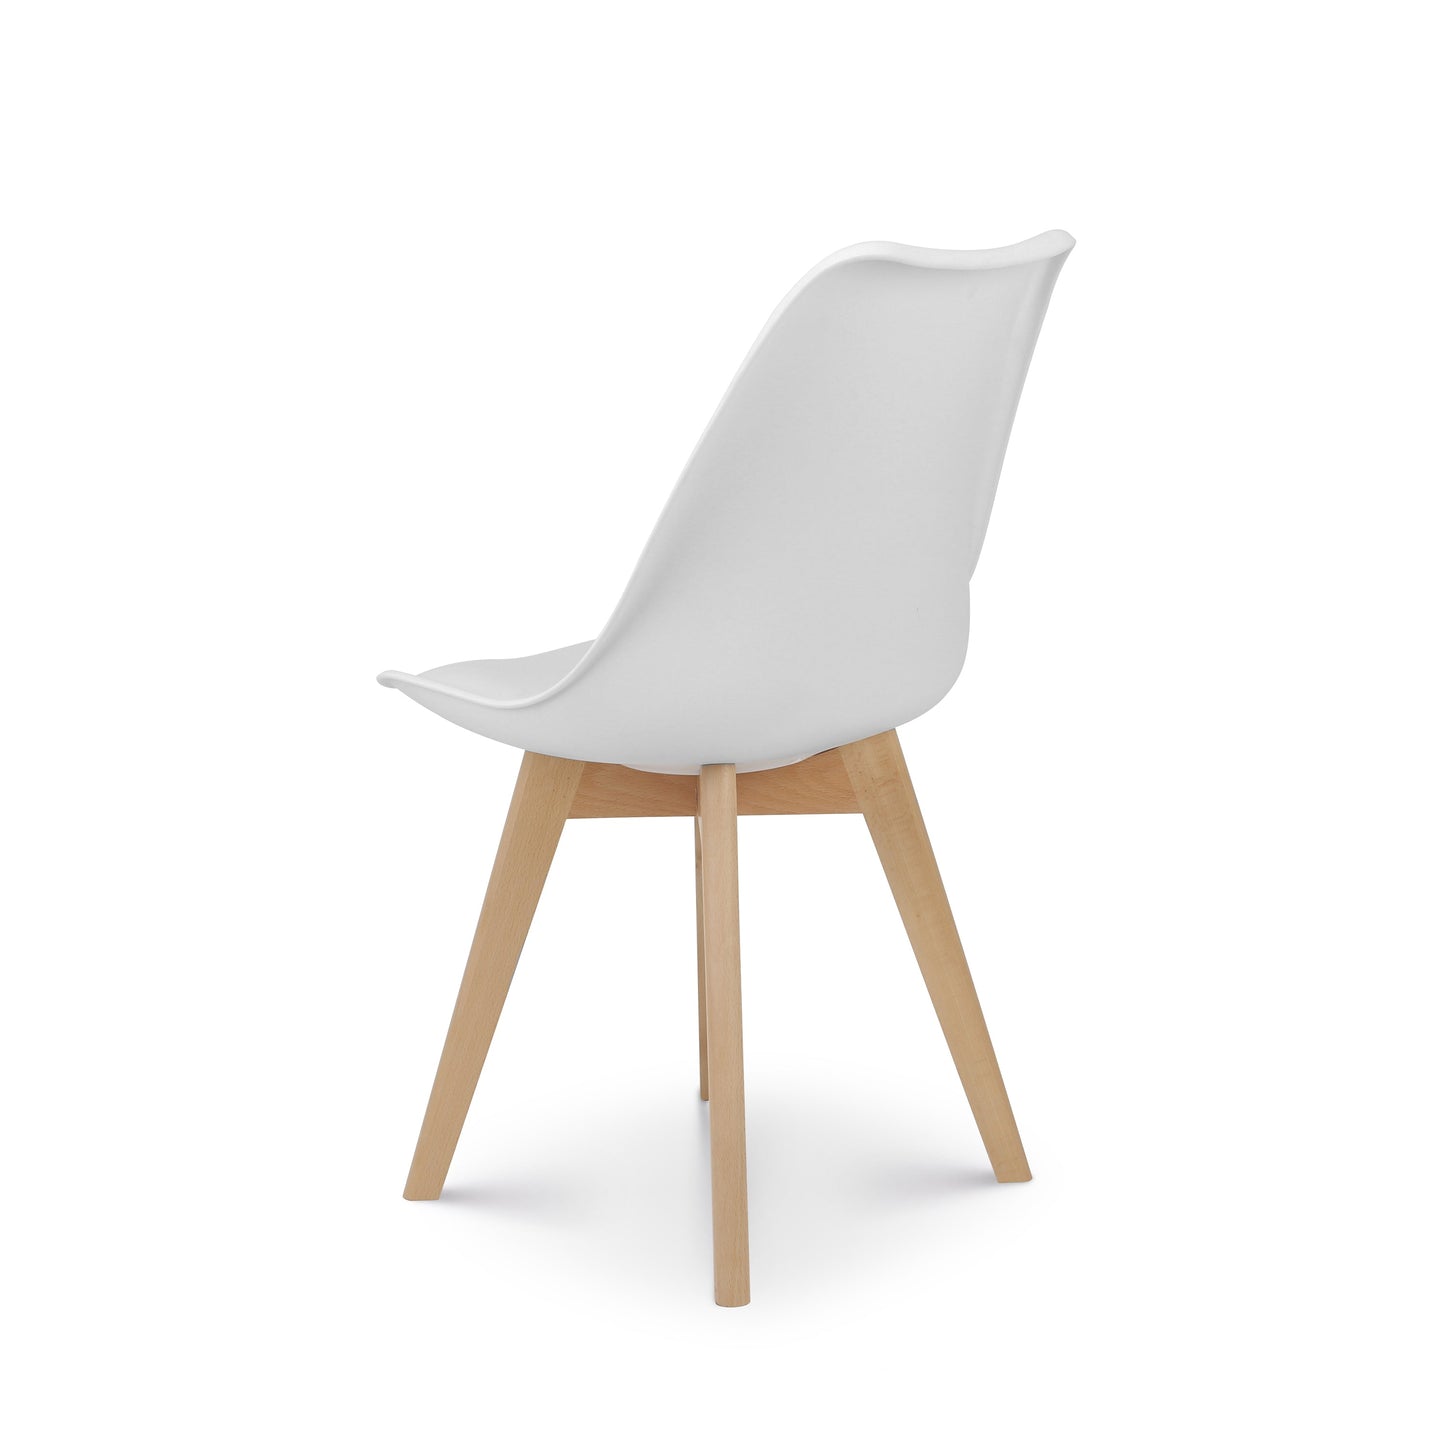 Chaise style scandinave VICTOIRE - Coque en résine blanche rembourrée et pieds en bois naturel